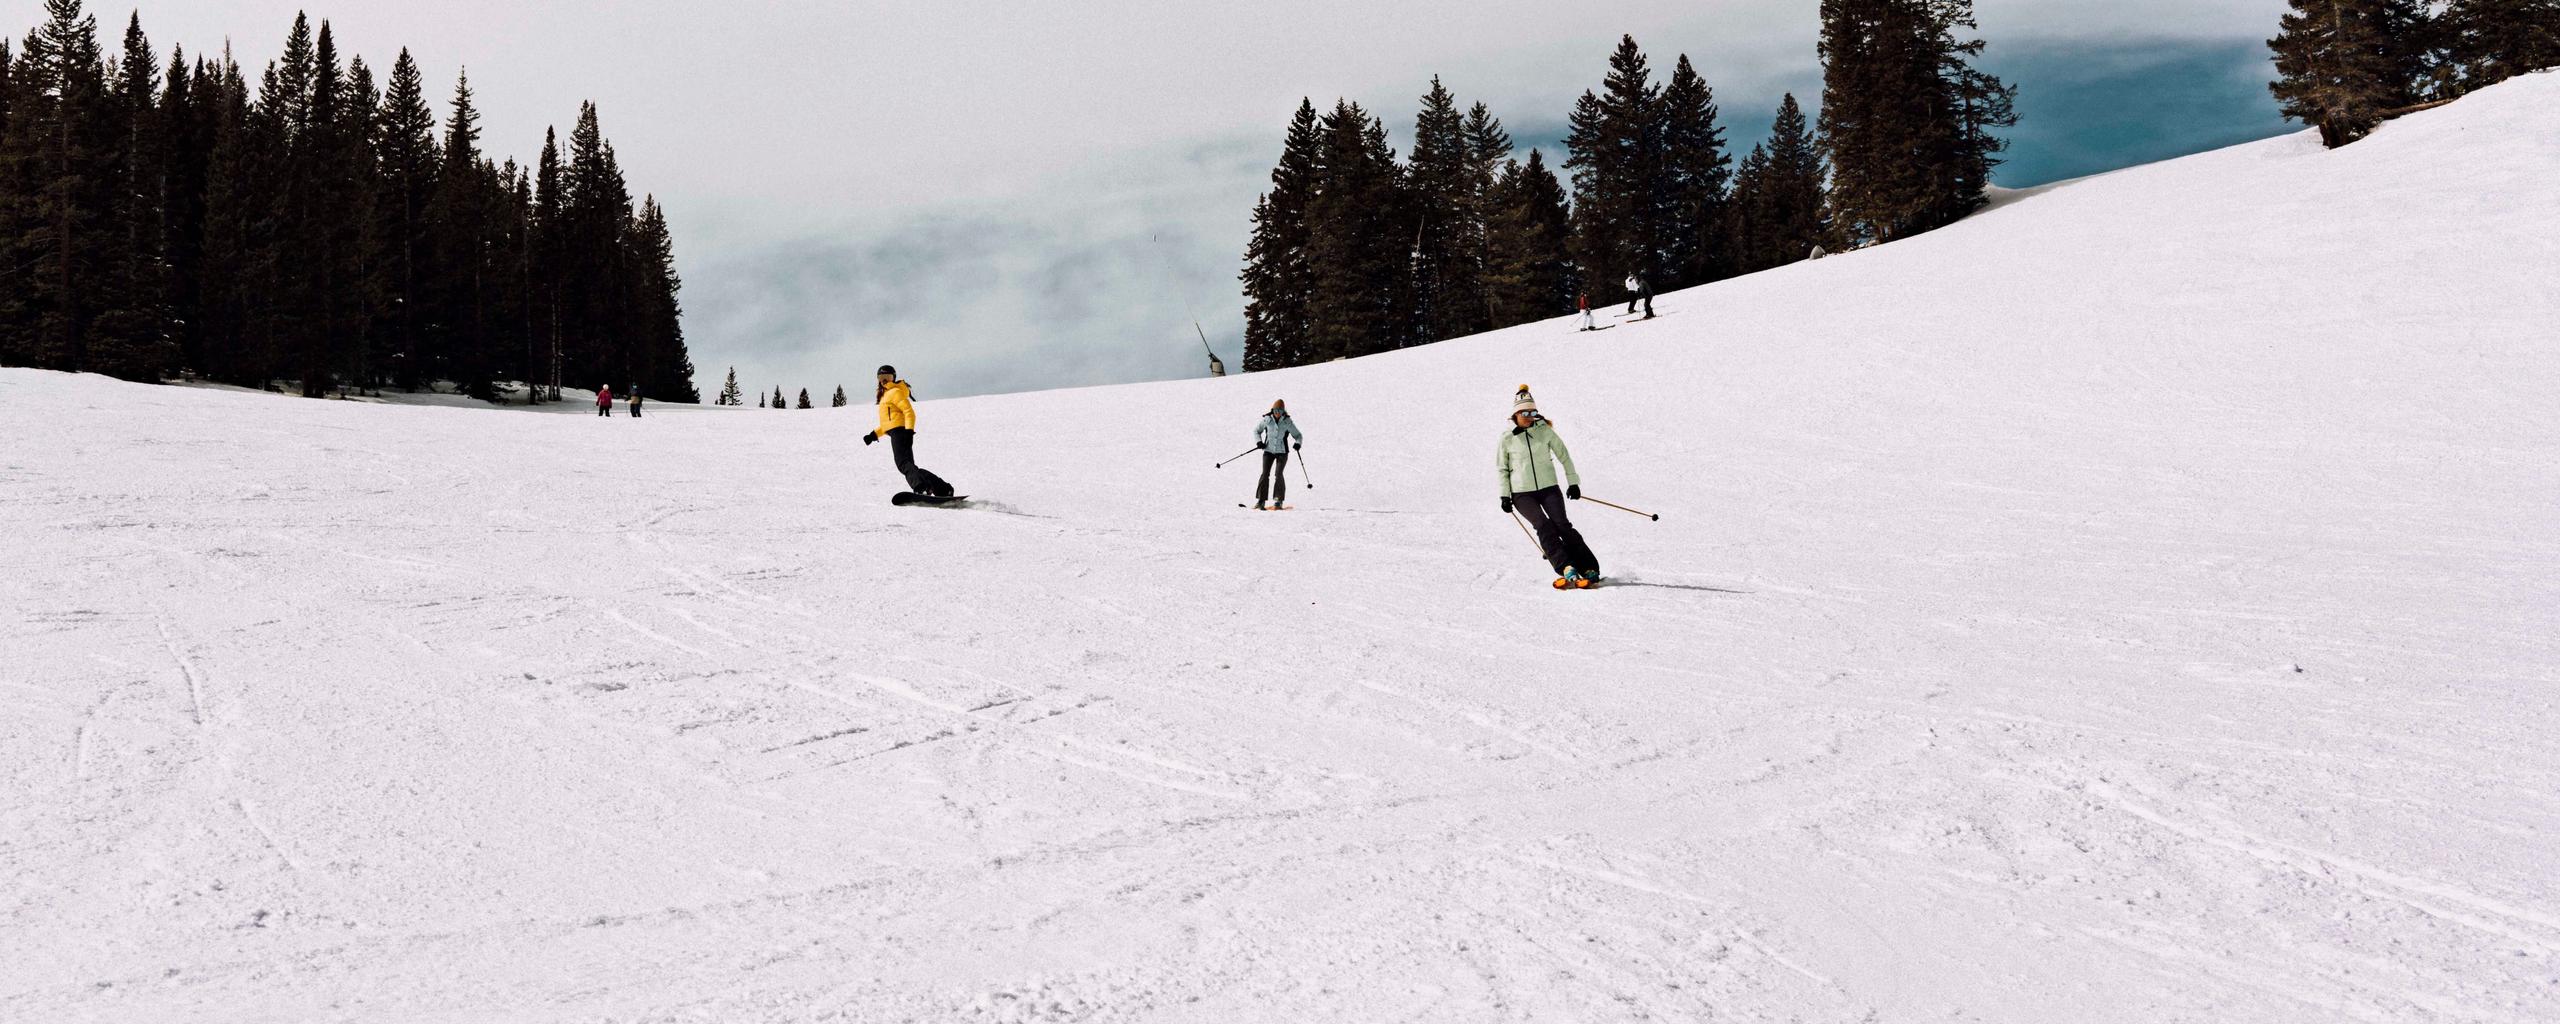 Girls skiing down a mountain